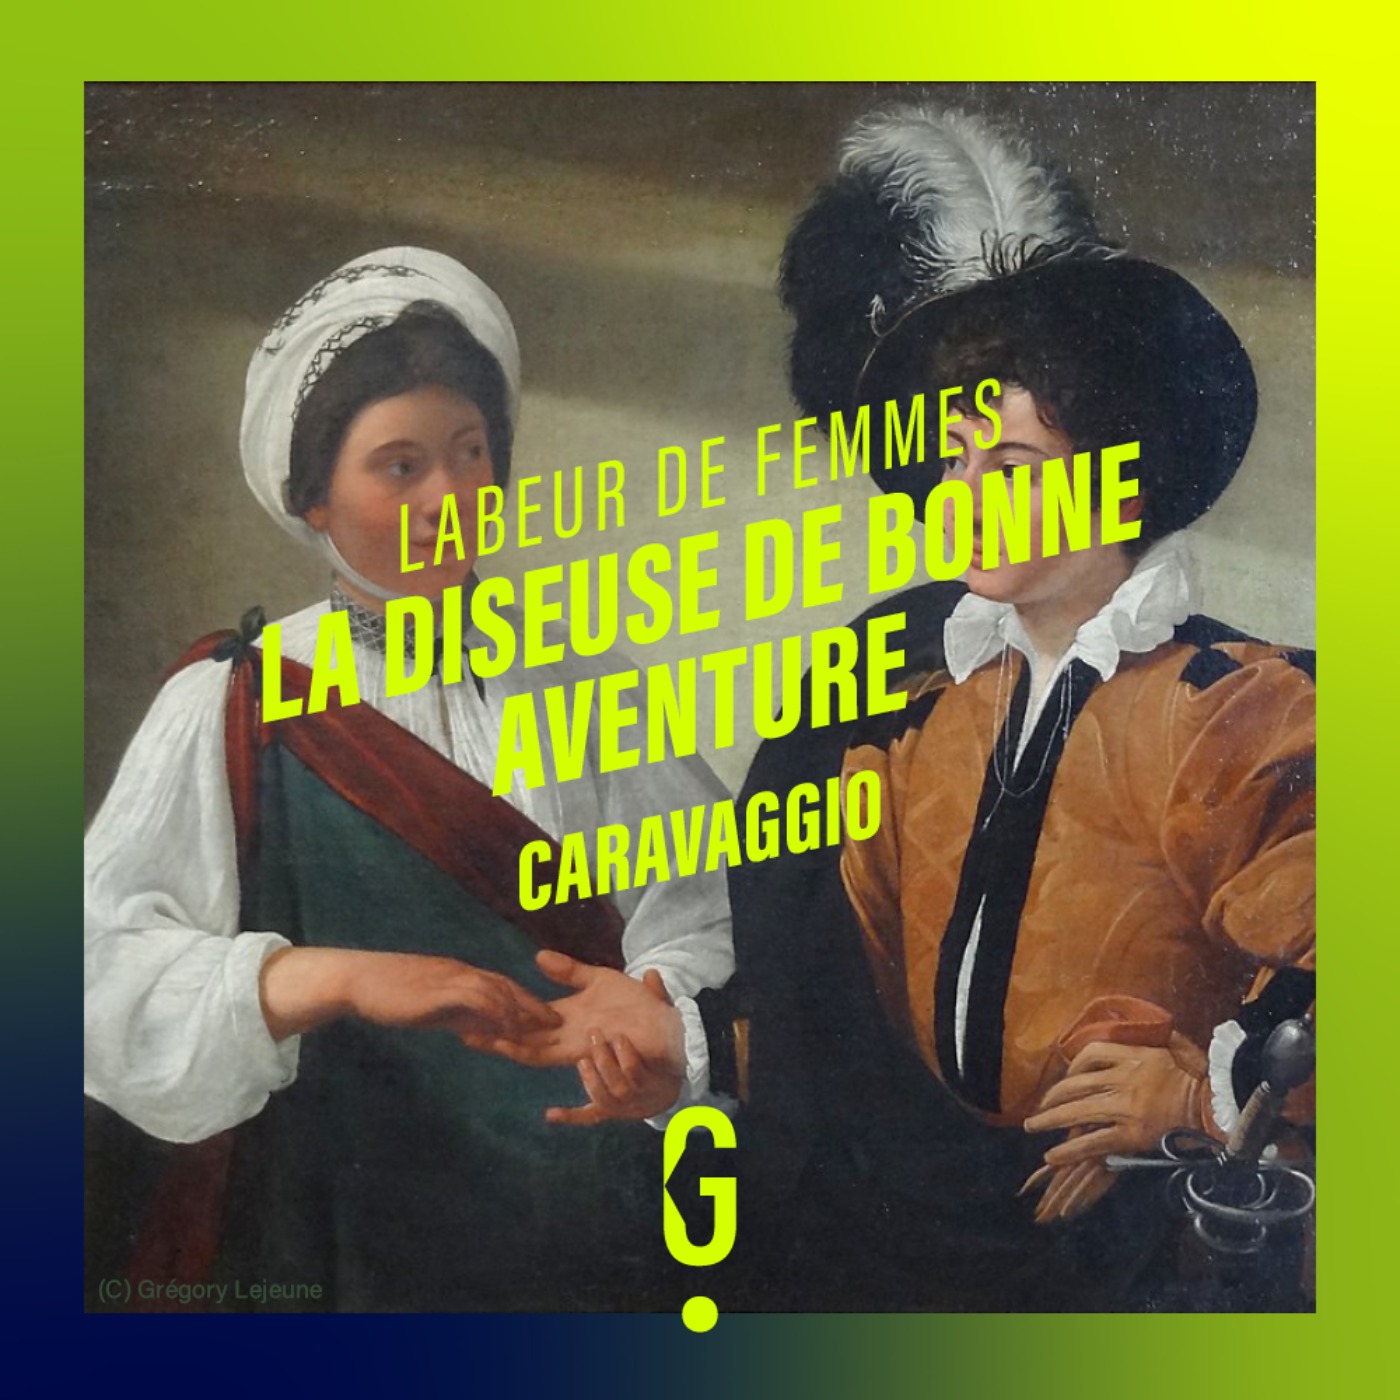 cover art for La diseuse de bonne aventure, Caravaggio